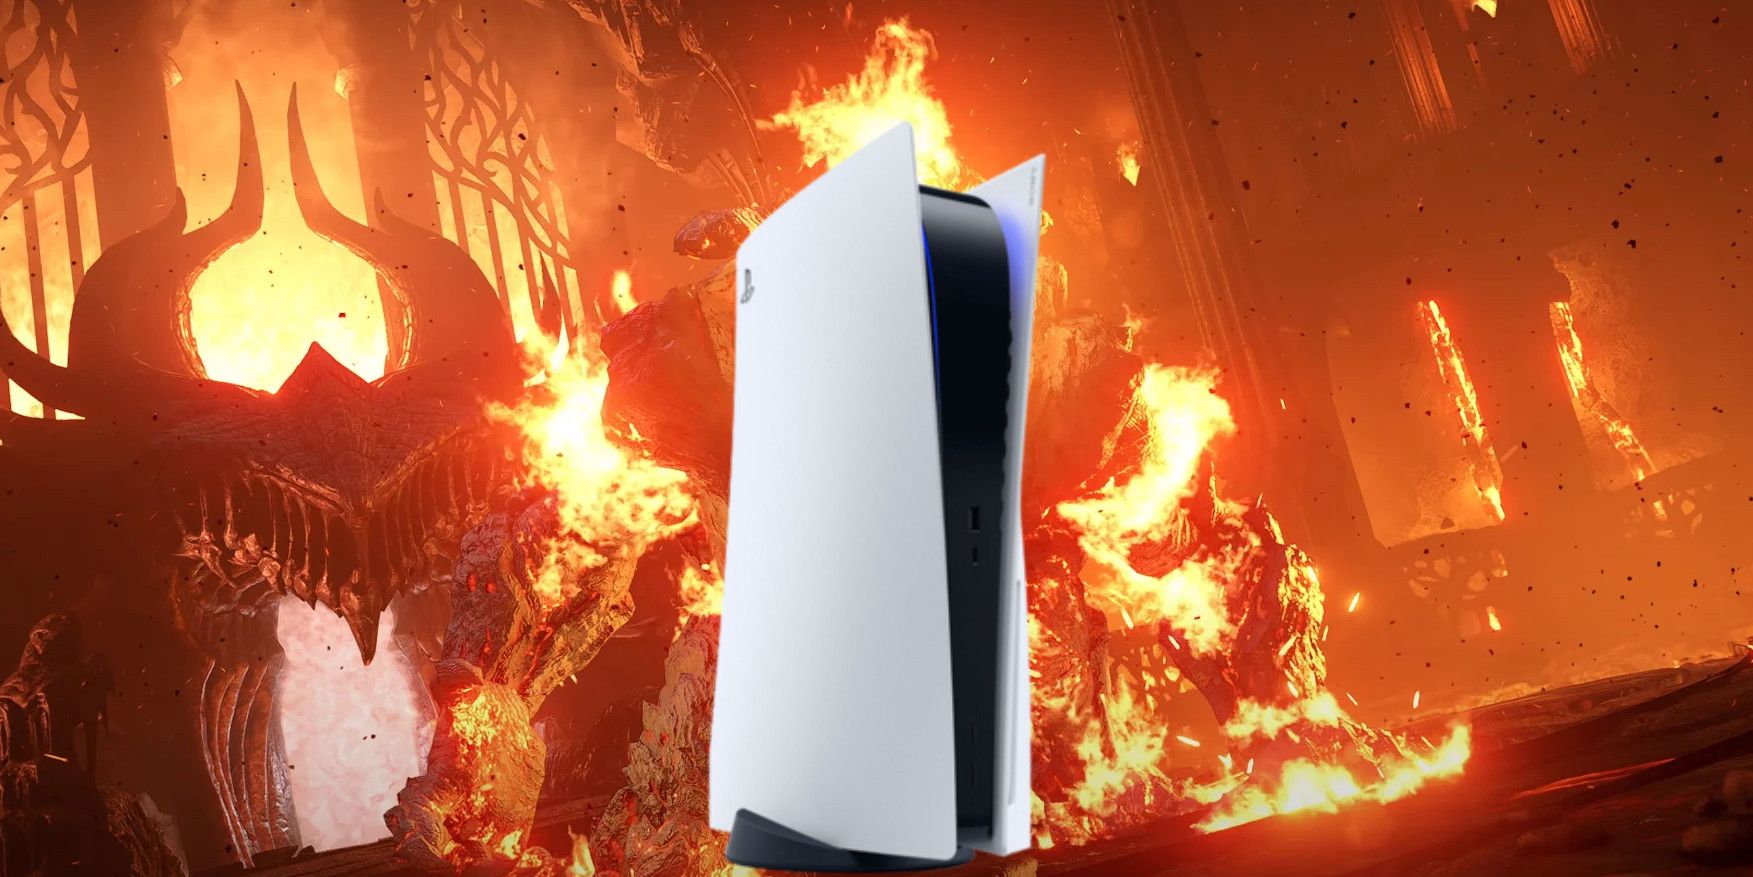 El nuevo modelo de PS5 podría funcionar más caliente según el video de desmontaje